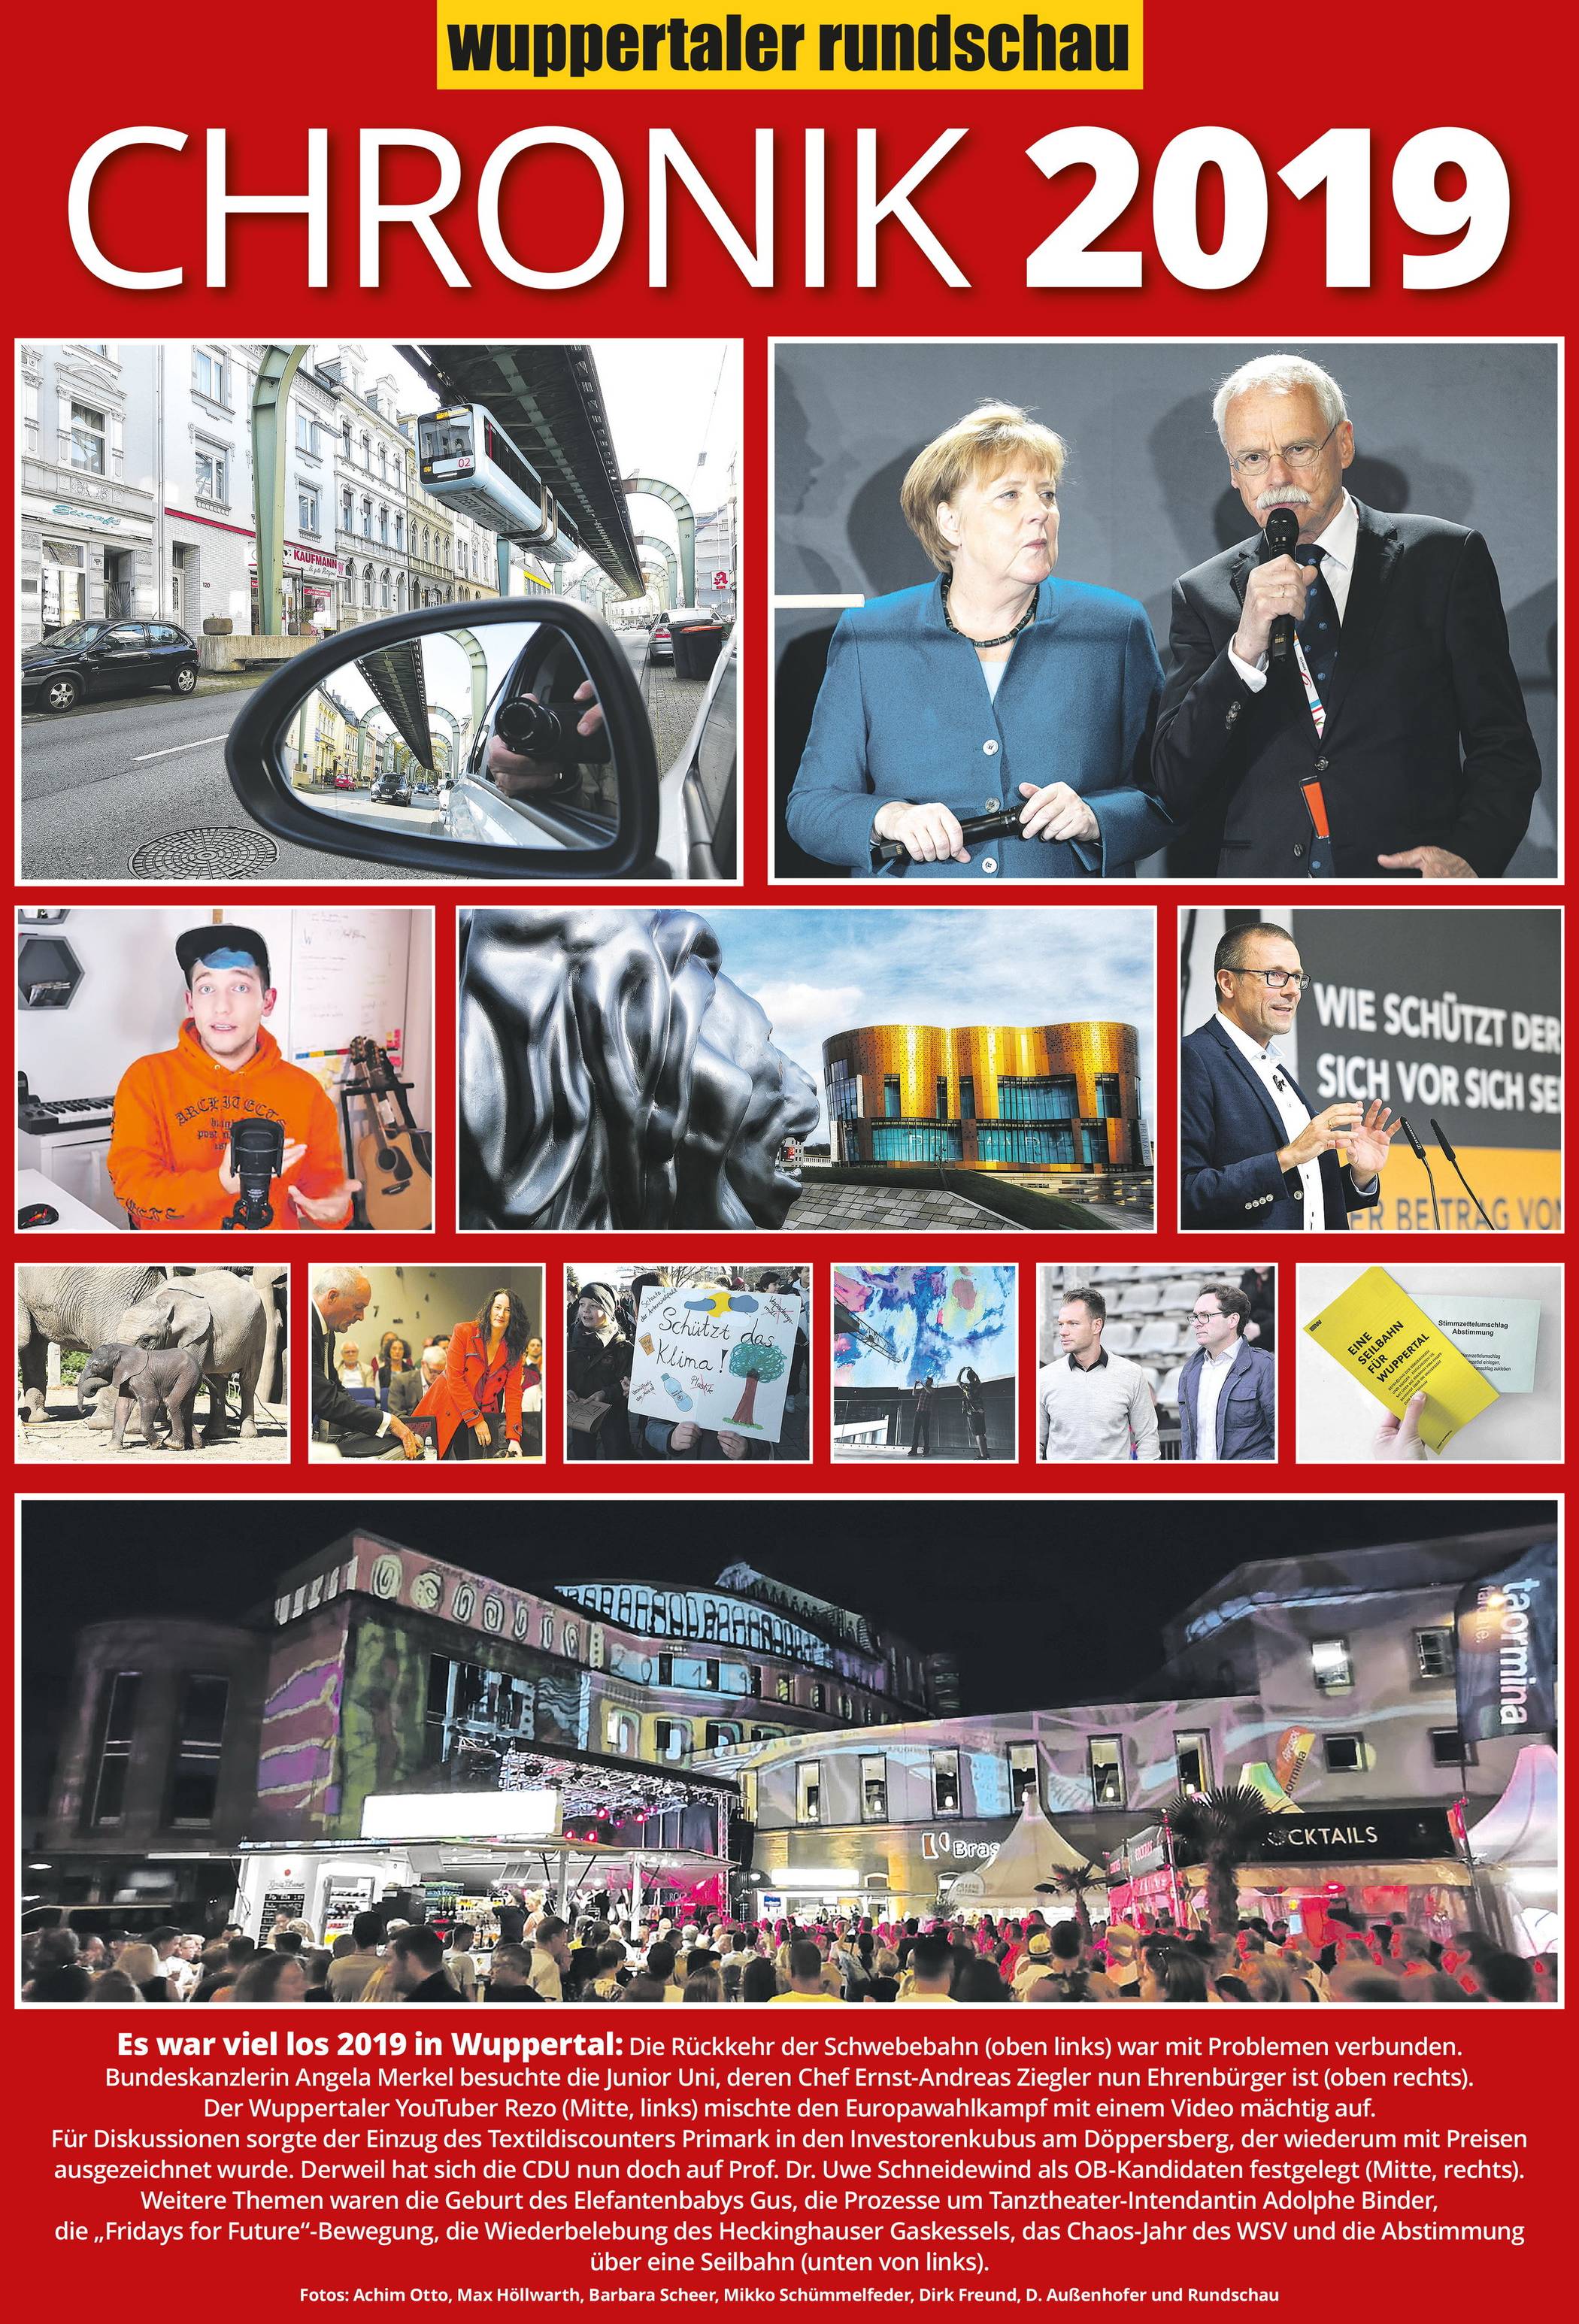 Wuppertals Chronik 2019: Y wie Yesterday …